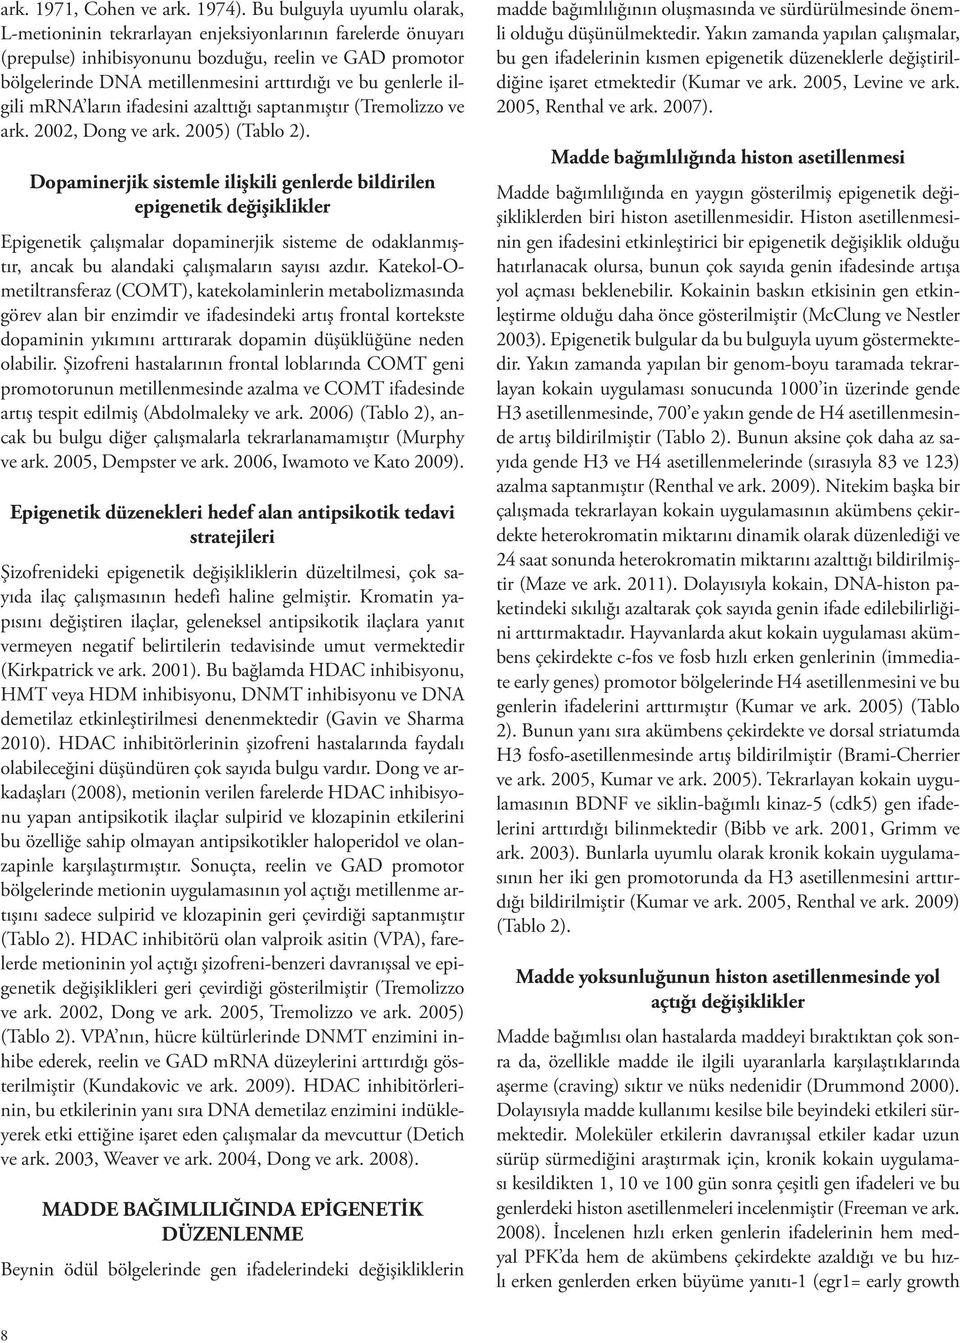 genlerle ilgili mrna ların ifadesini azalttığı saptanmıştır (Tremolizzo ve ark. 2002, Dong ve ark. 2005) (Tablo 2).